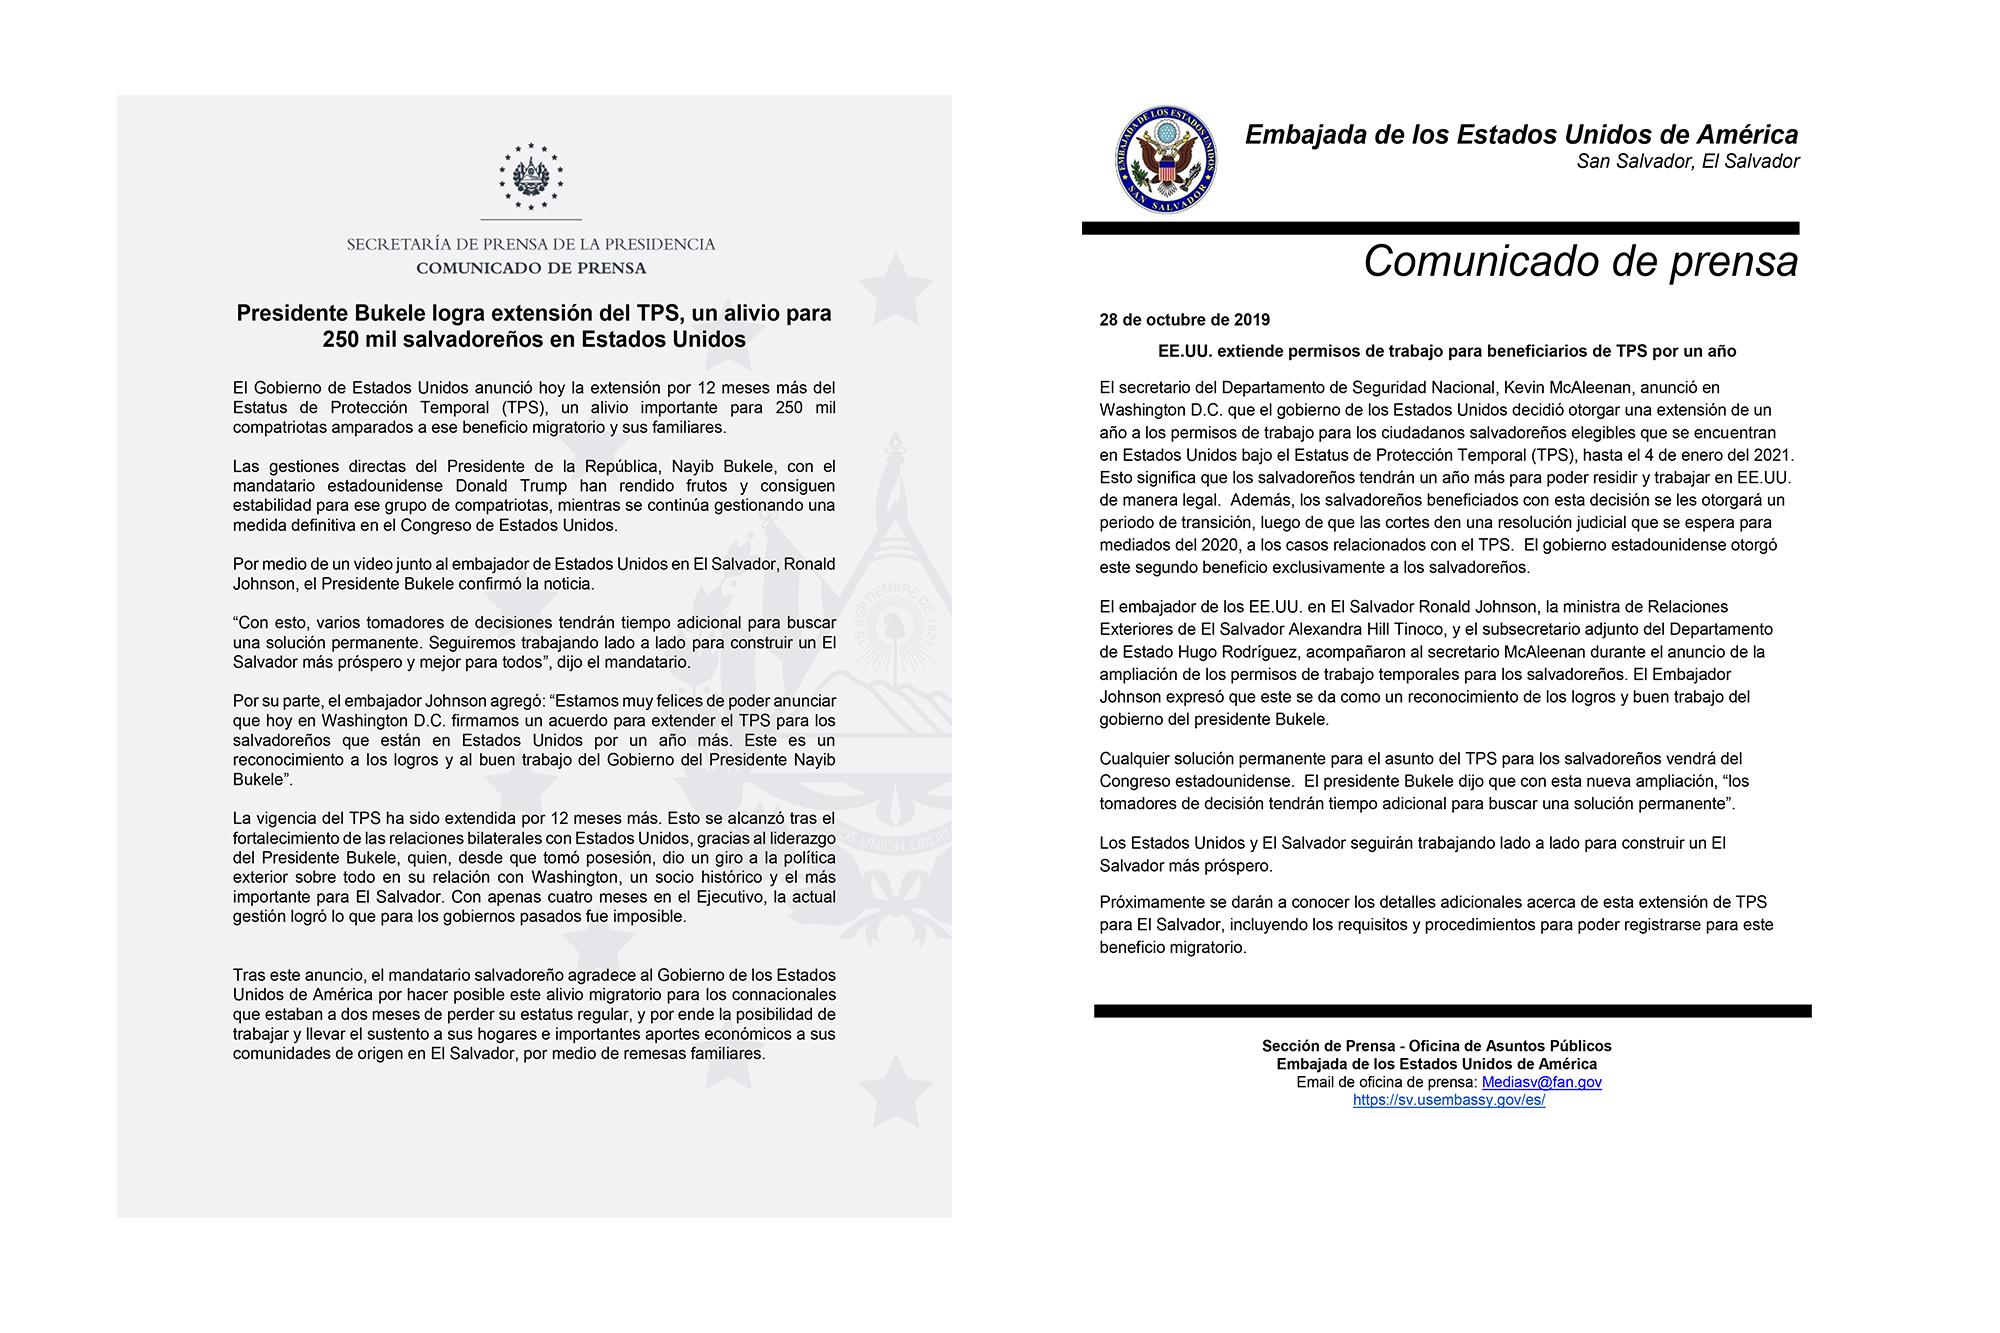 Comunicados de prensa de la Embajada Americana en El Salvador y el Gobierno de El Salvador, sobre la exyensión del TPS para salvadoreños. 28 de octubre de 2019. 